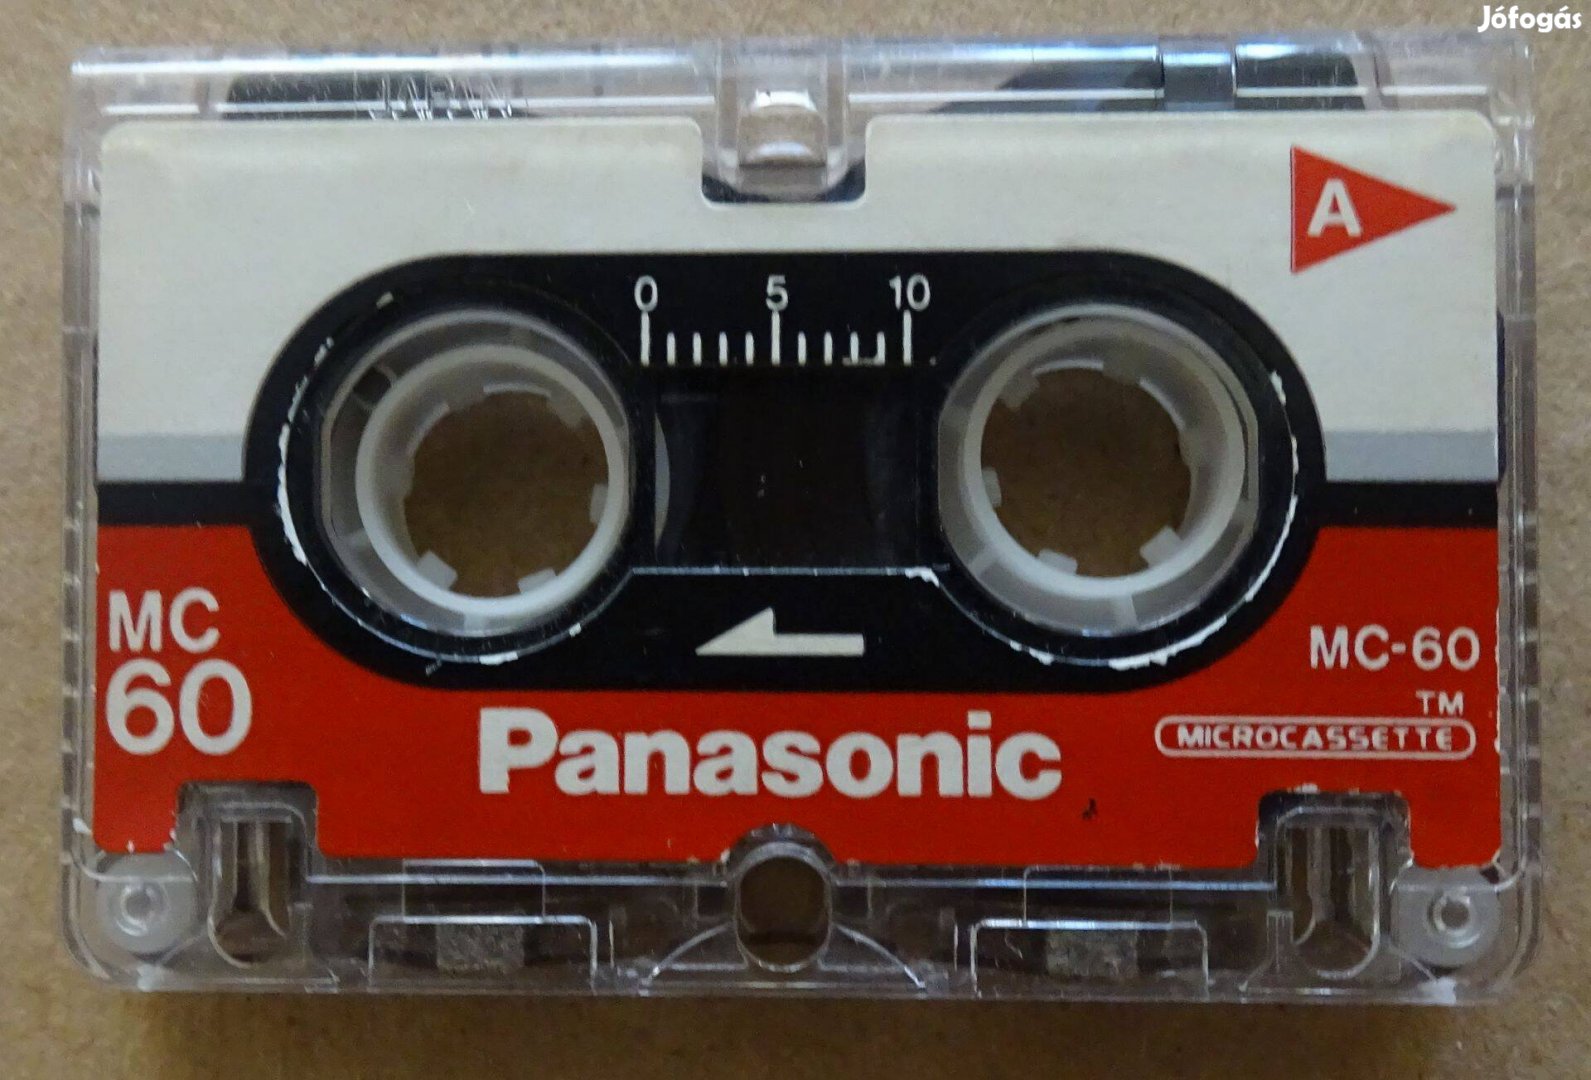 Panasonic mikrokazetta